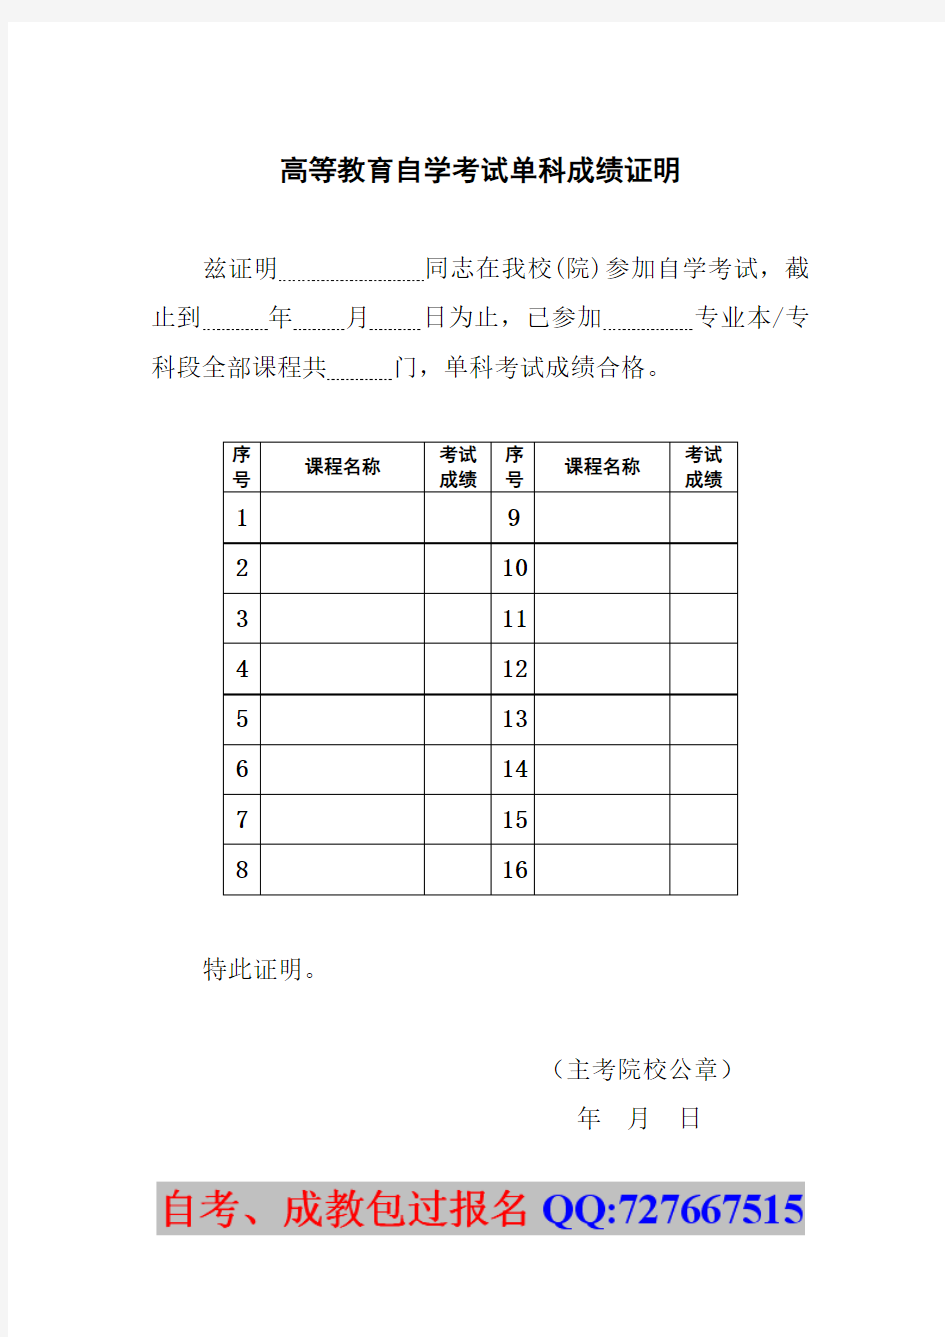 高等教育自学考试单科成绩证明 - 中国普法网